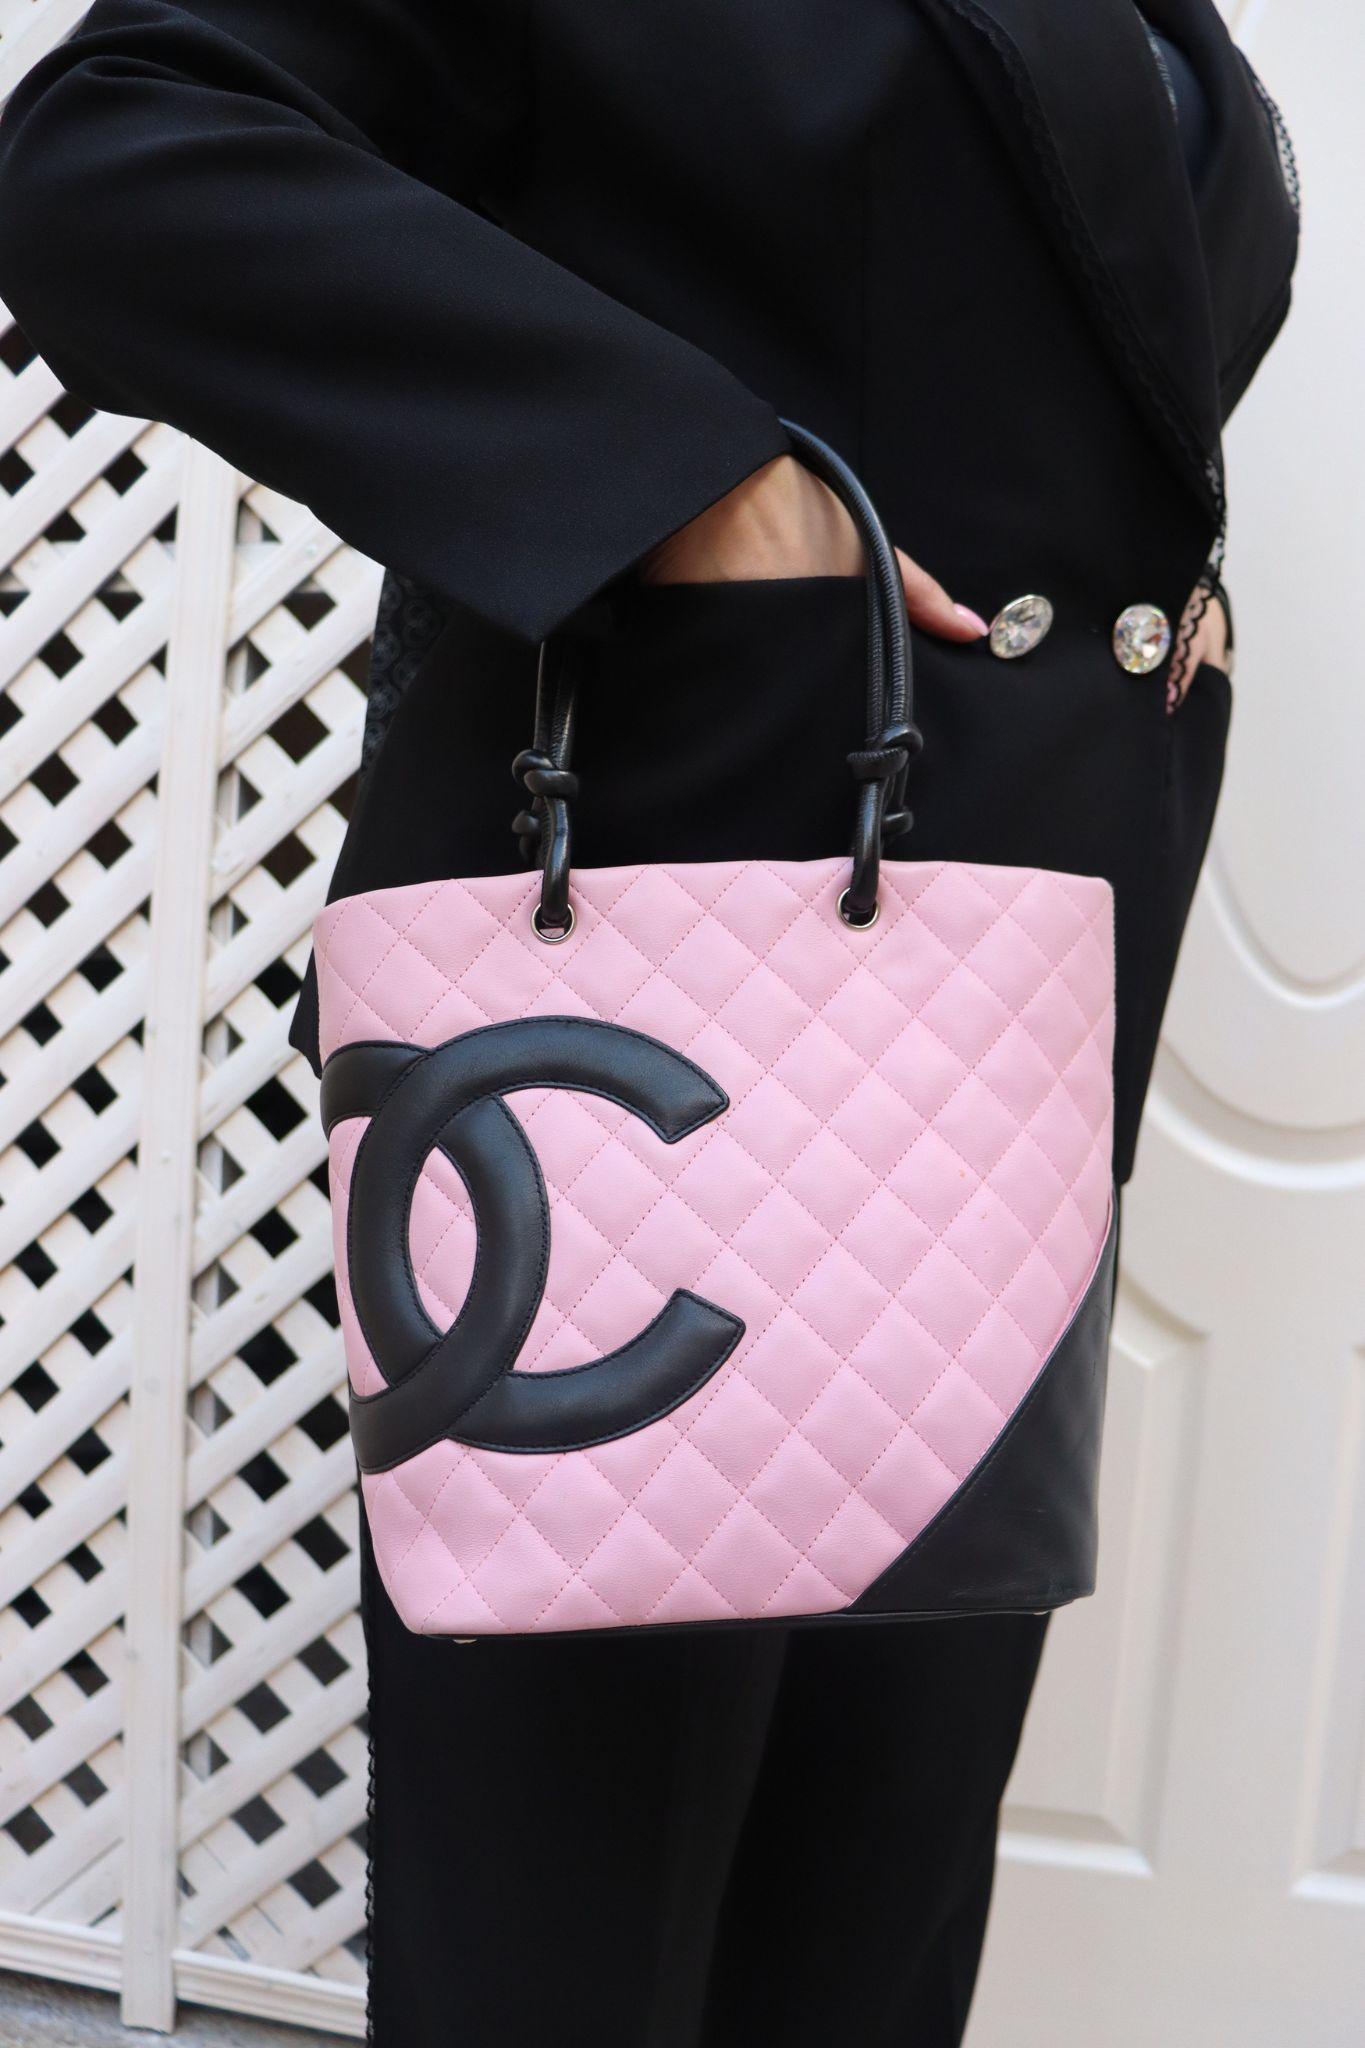 Chanel Medium Ligne Cambon Tote Bag, mit großem CC-Logo, geknoteten Schulterriemen, Innenfutter aus Logo-Jacquard und zwei Innentaschen mit Reißverschluss.

MATERIAL: Leder
Hardware: Silber
Serien-Nr. 96xxxxx
Höhe: 24cm
Breite: 20cm
Tiefe: